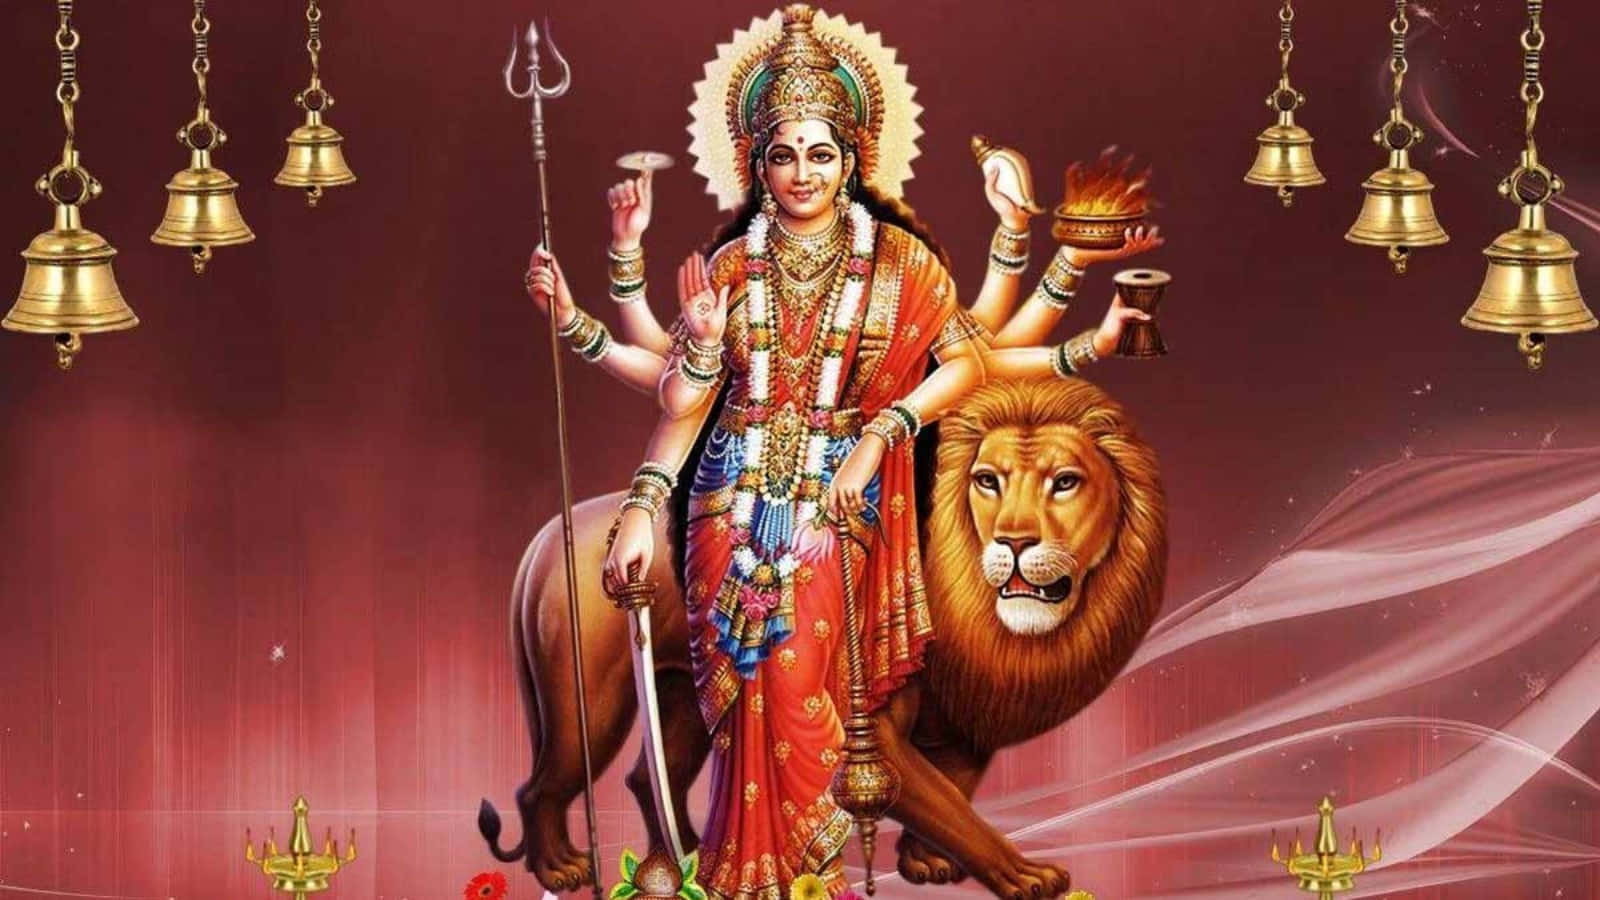 Affascinanterappresentazione Divina Della Dea Durga